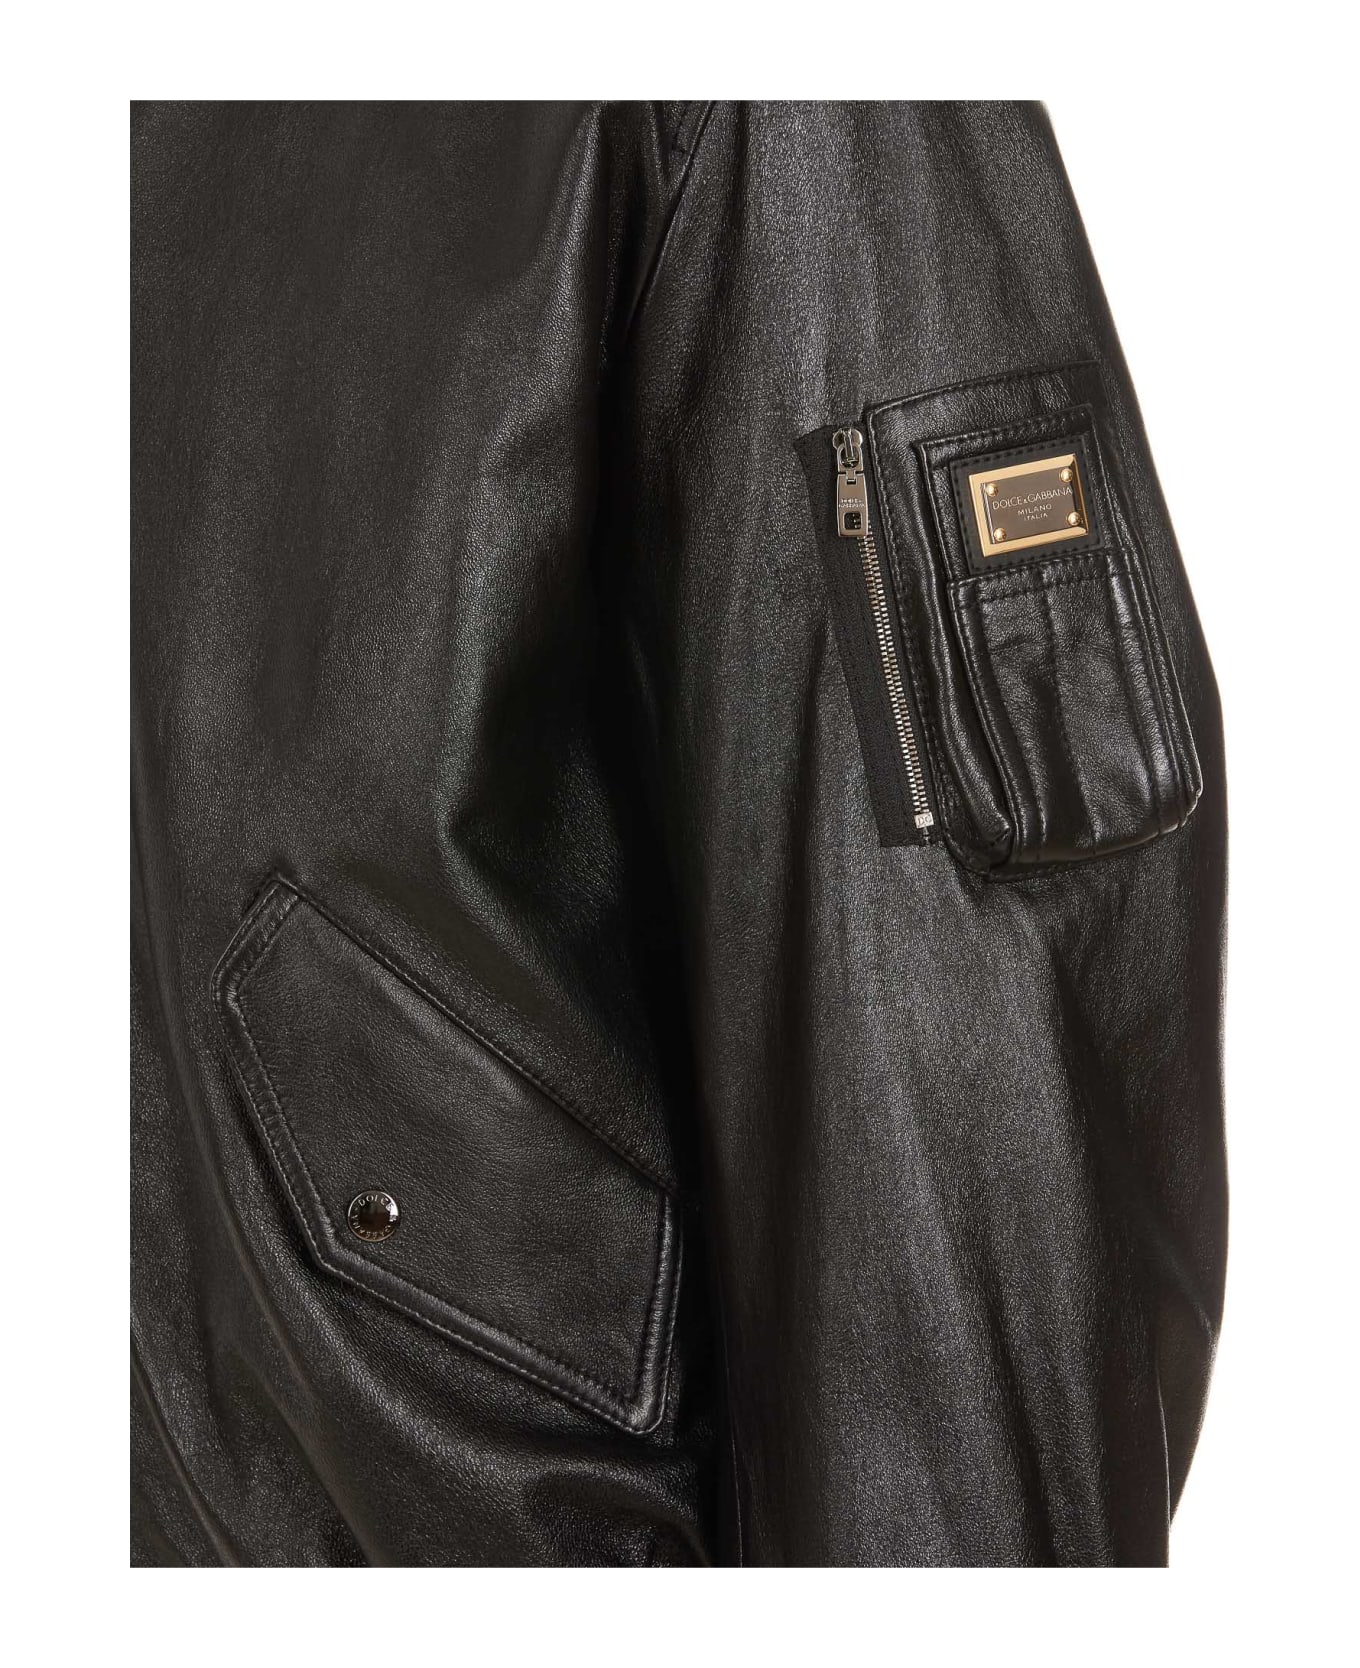 Dolce & Gabbana Logo Leather Jacket - Nero